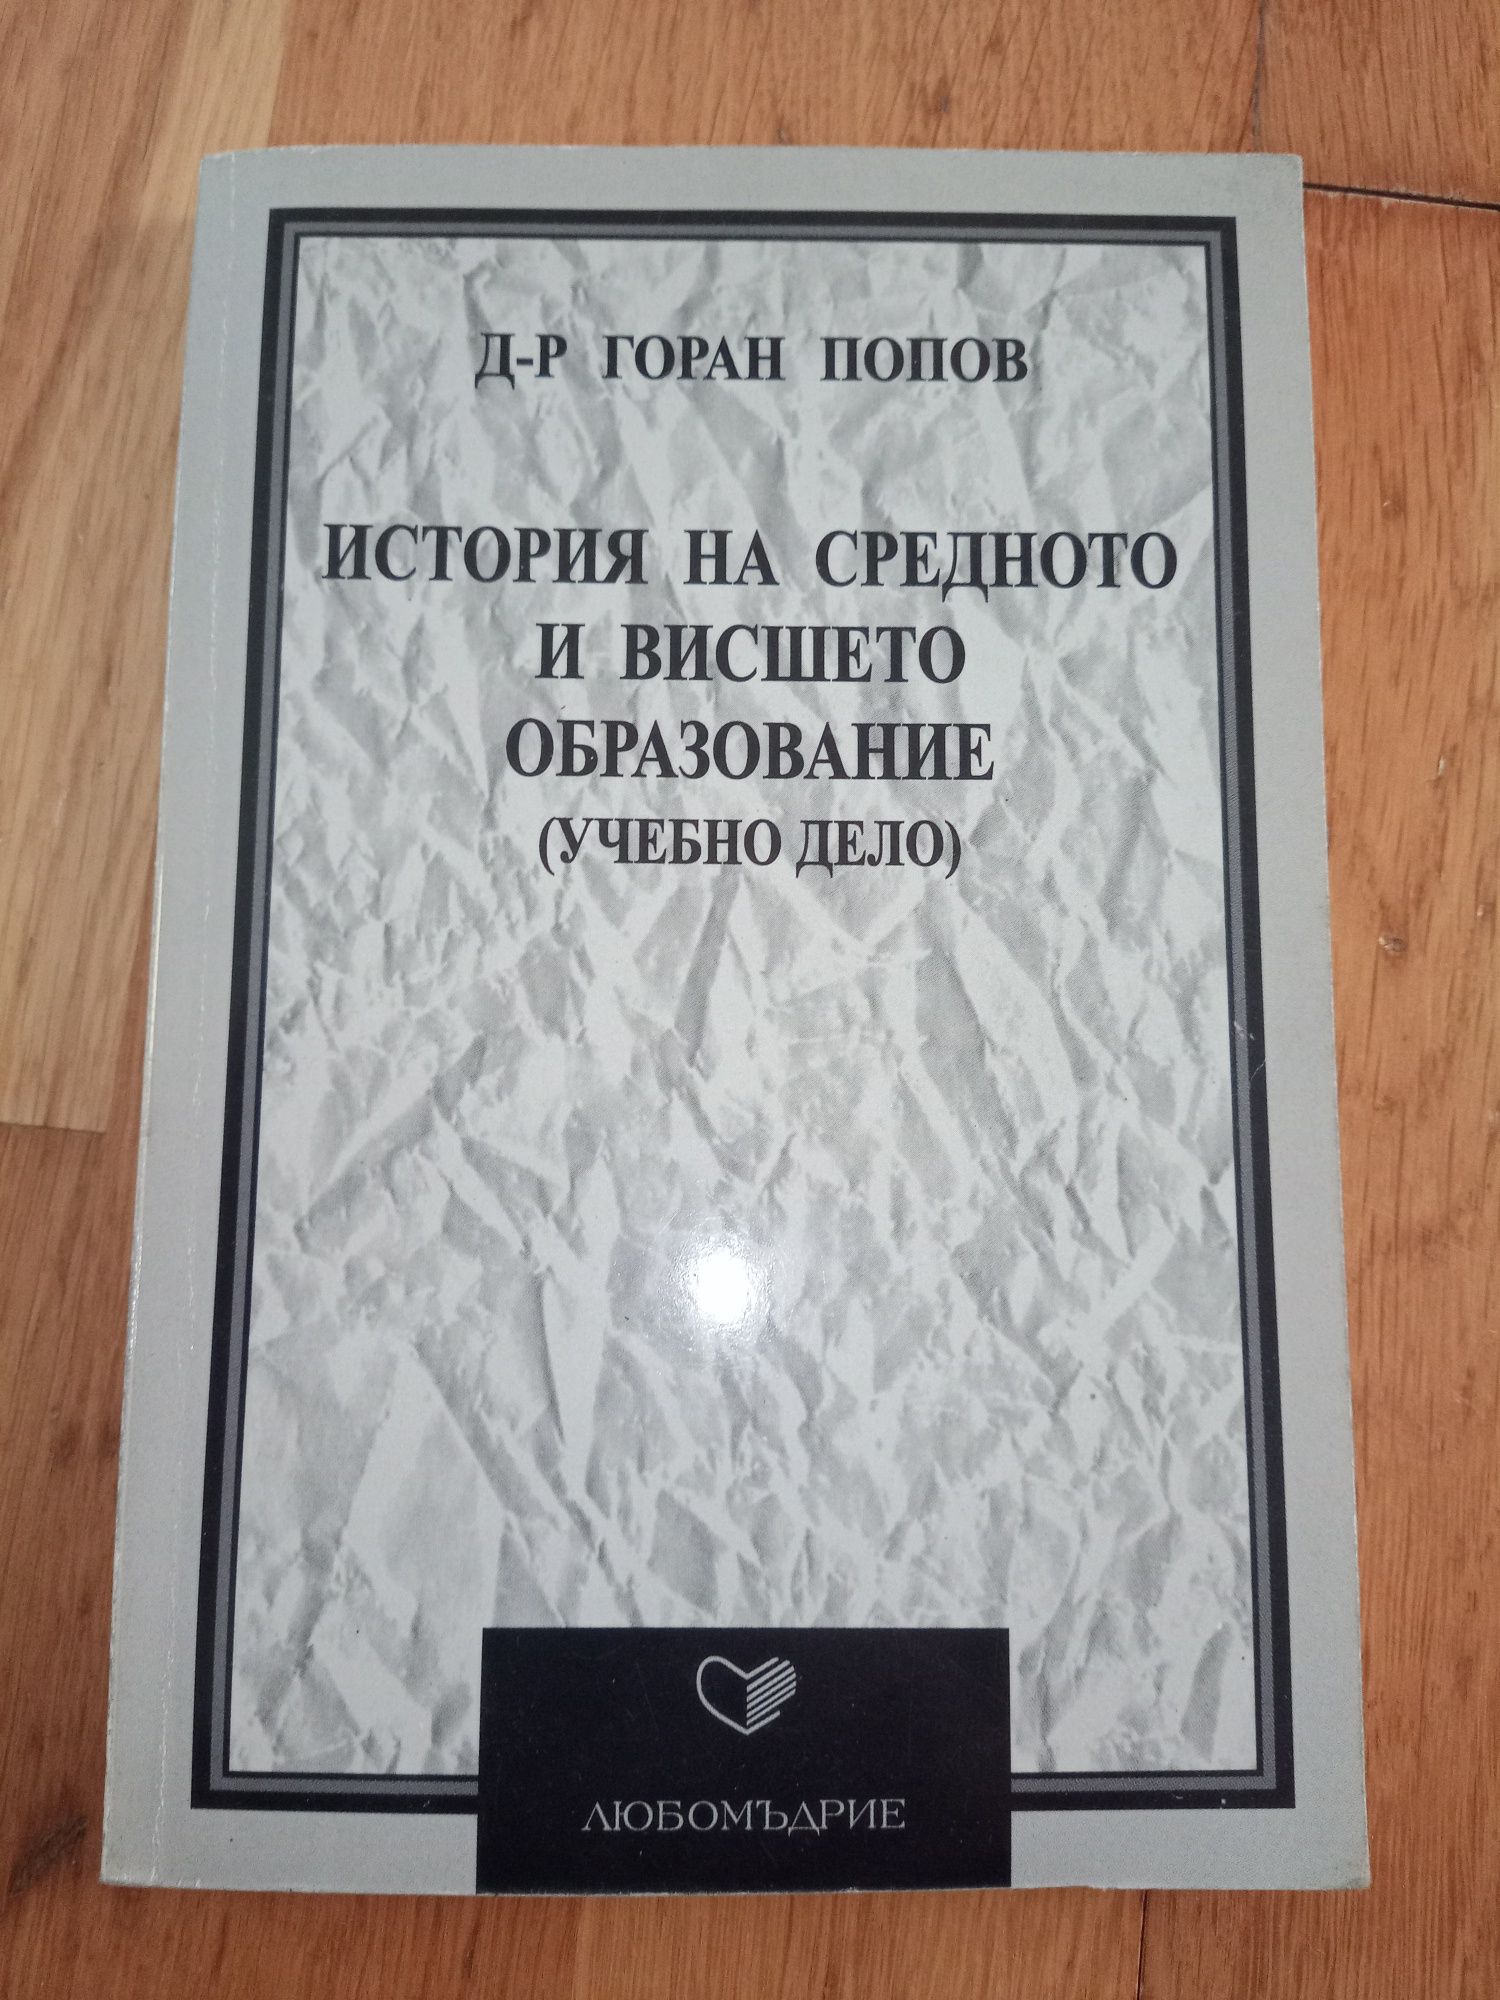 Учебник История на средното и висшето образование на Горан Попов